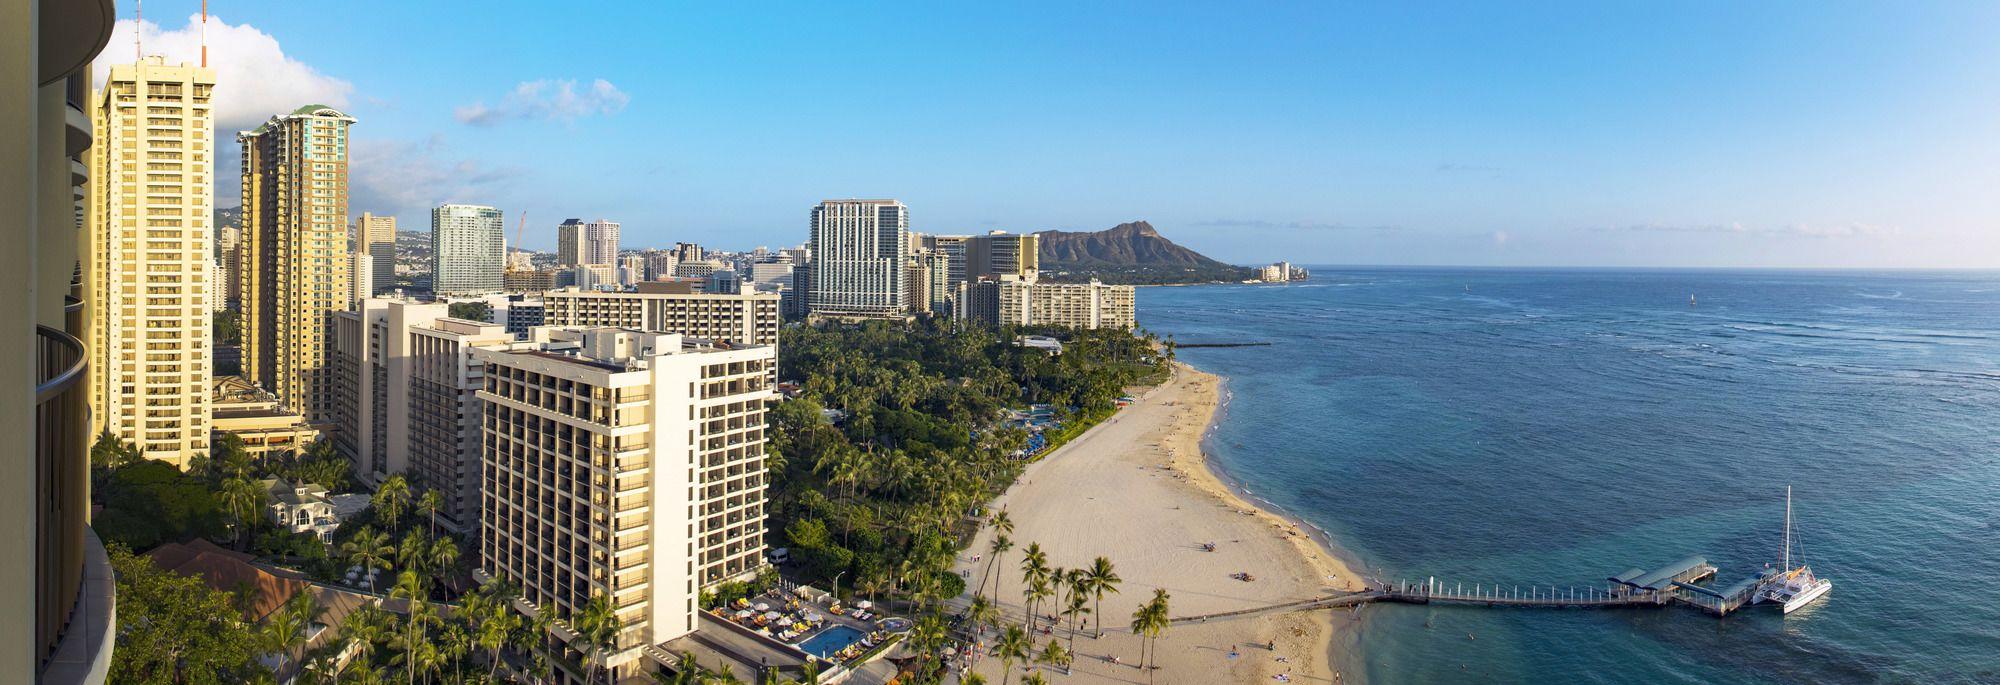 Playa Hilton Grand Vacations at Hilton Hawaiian Village